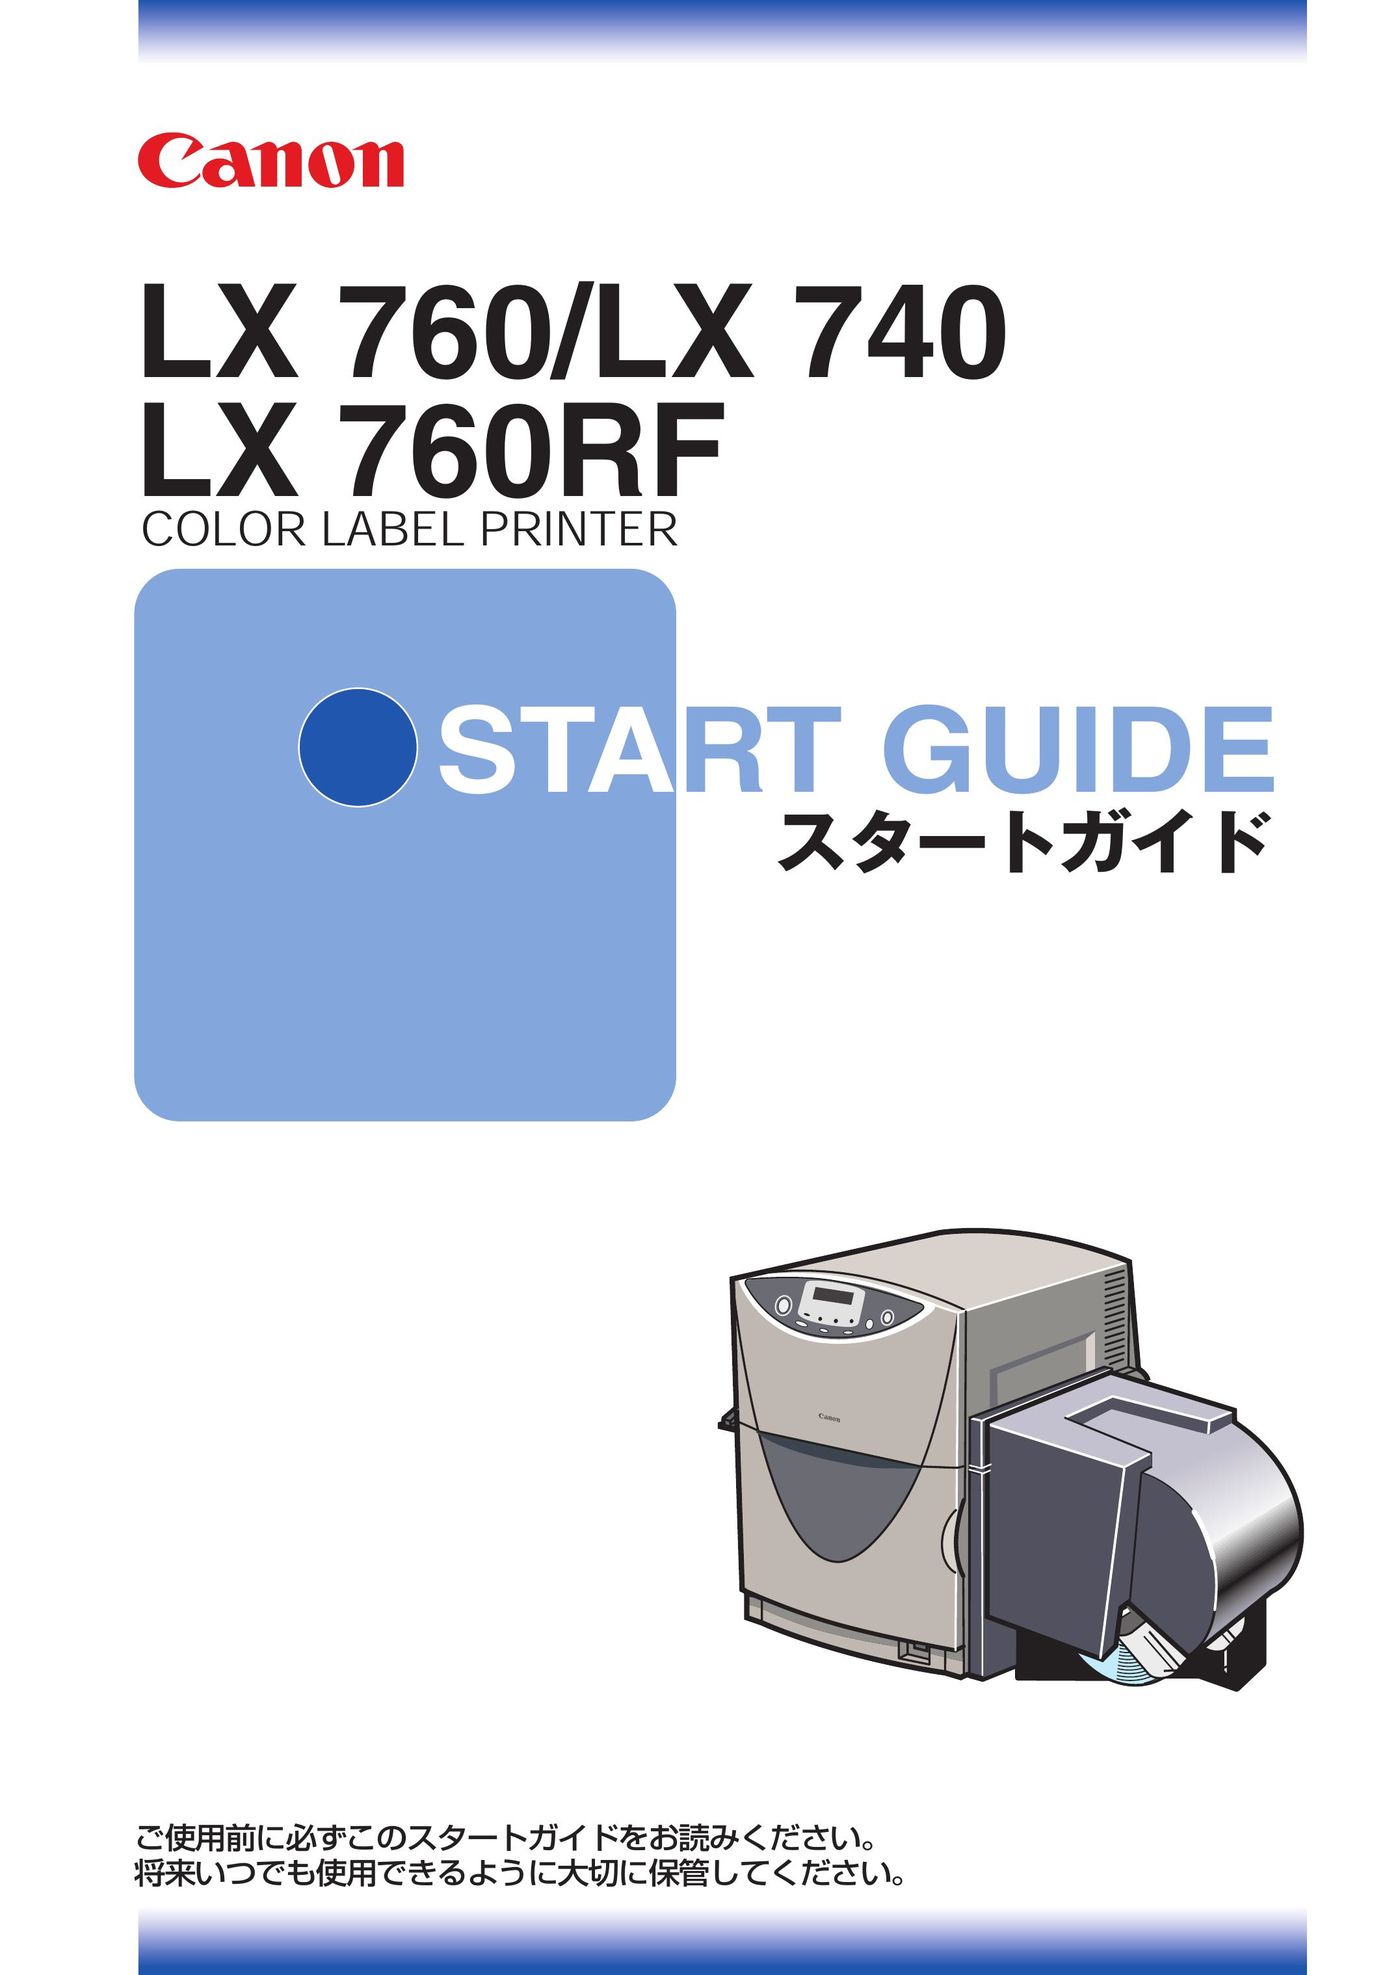 Canon LX 760 Label Maker User Manual